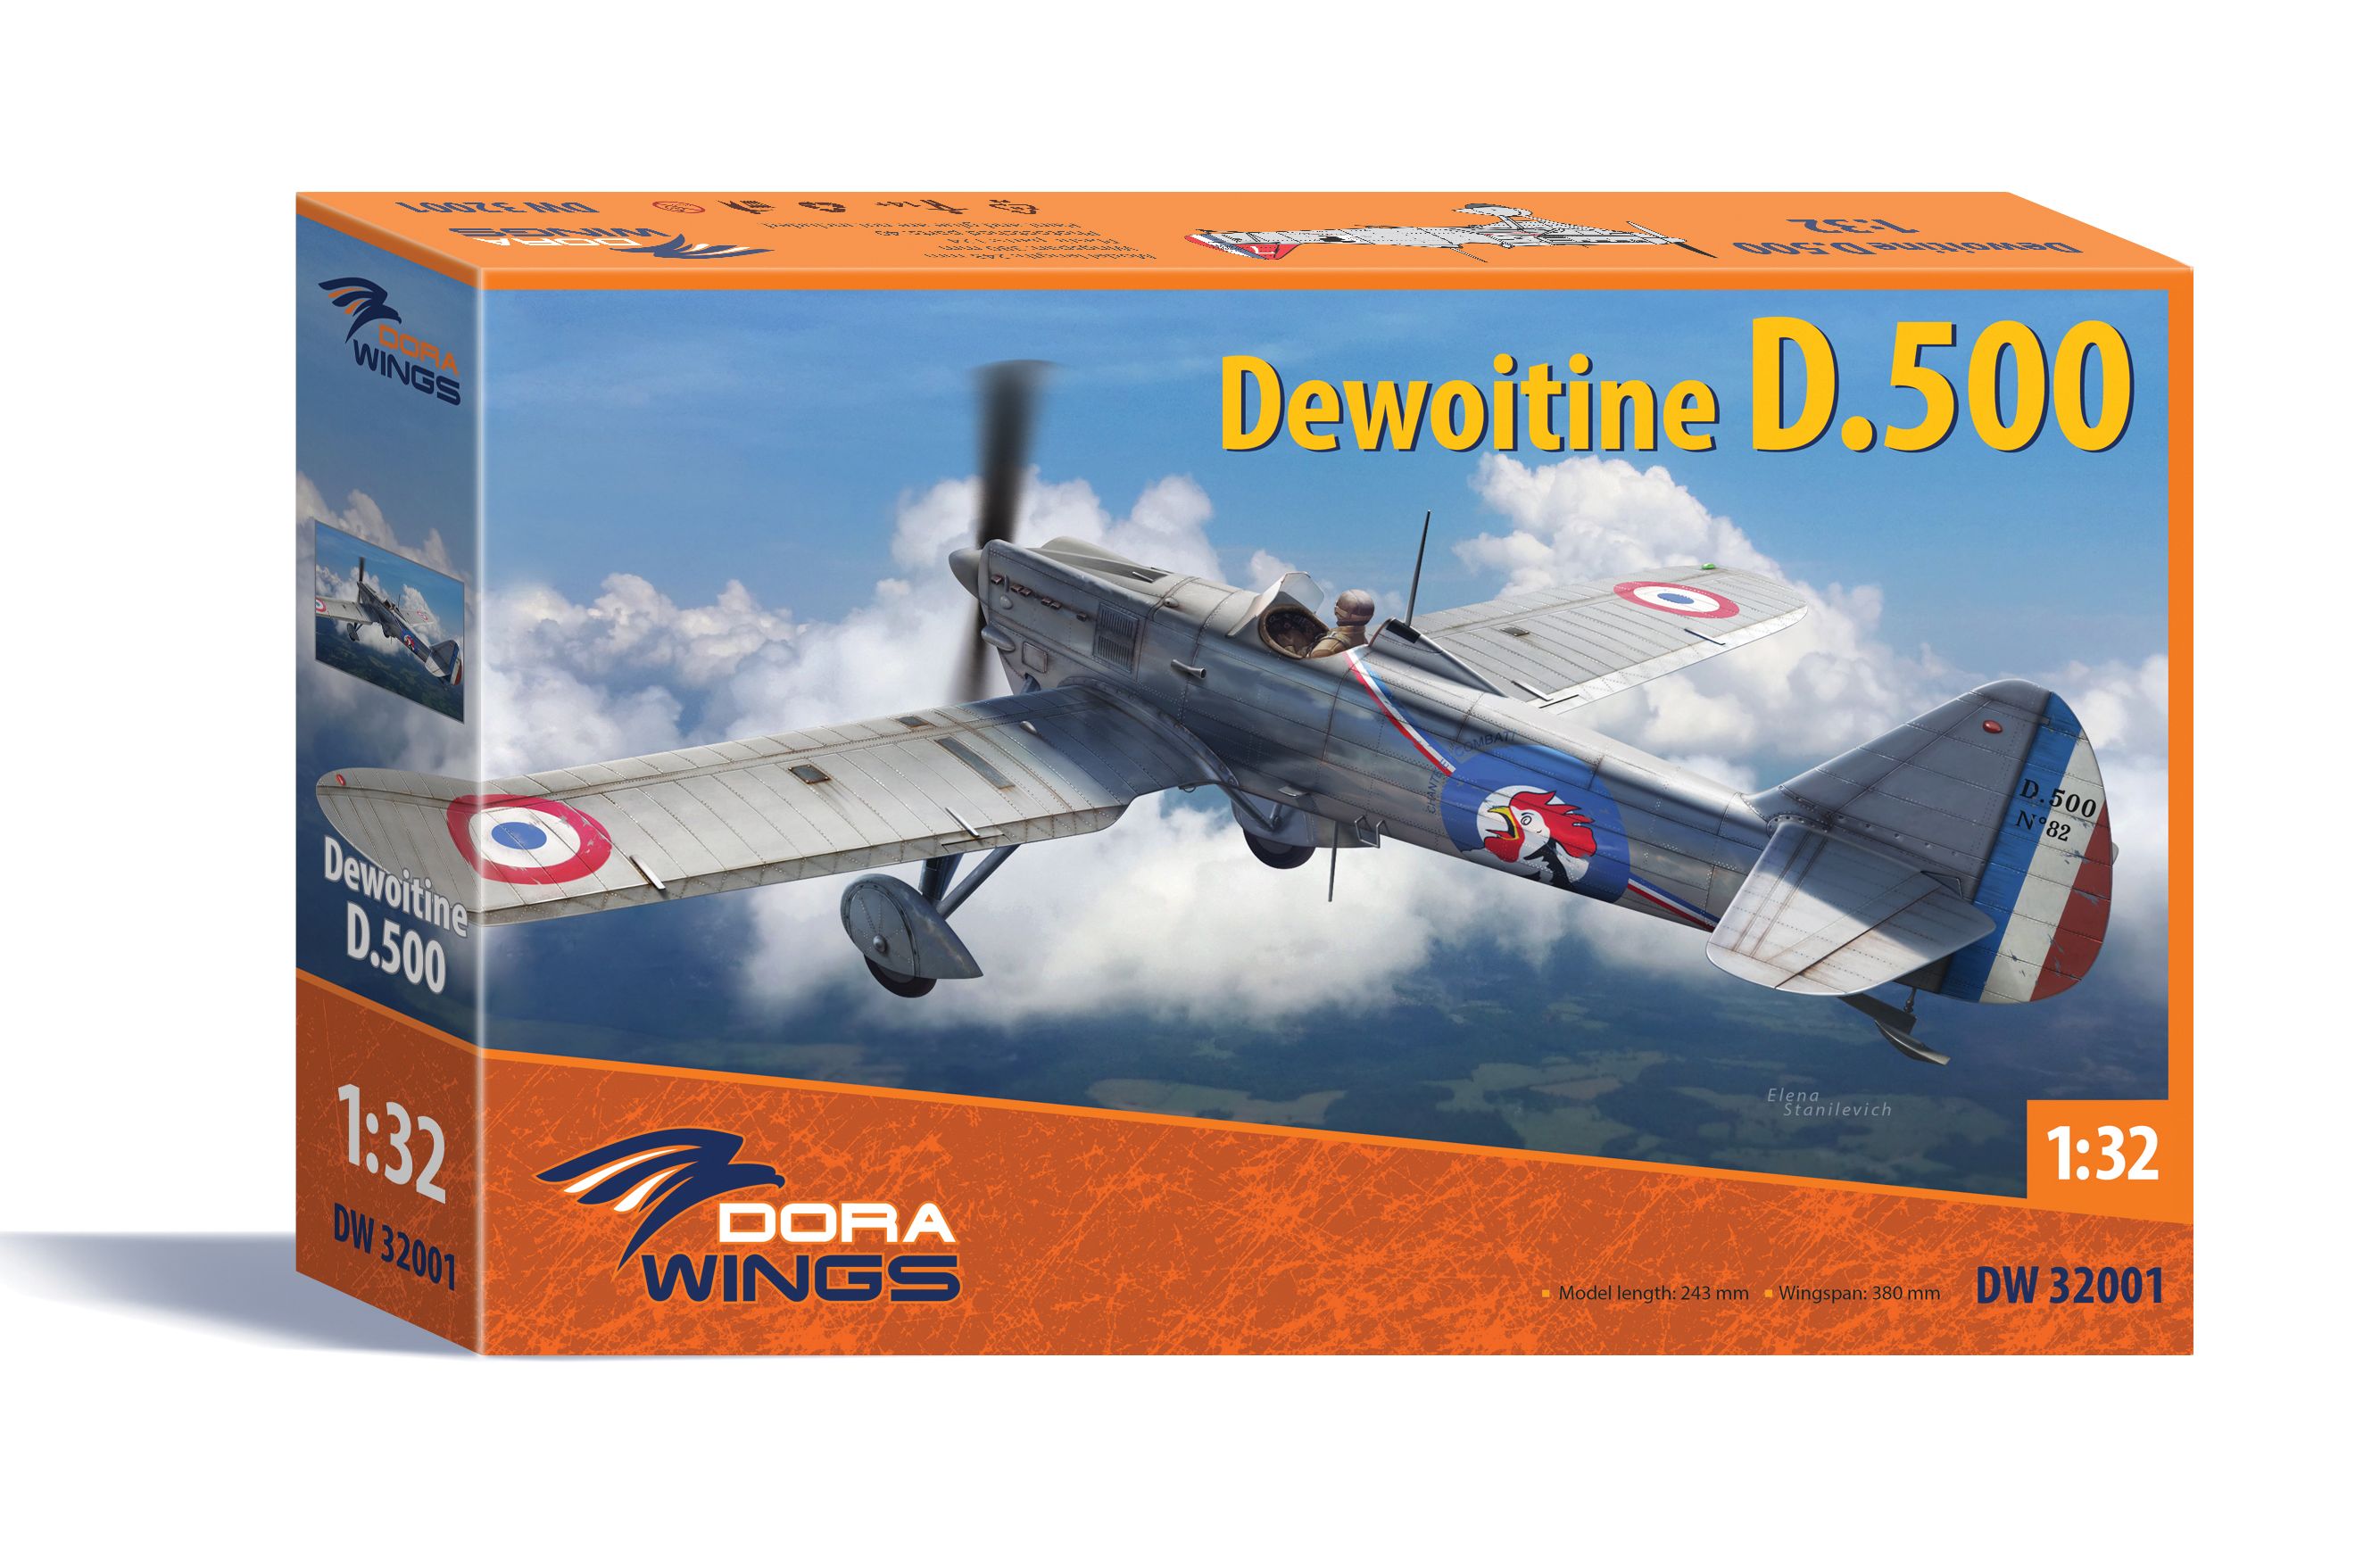 Dewoitine D.500 (DW32001)